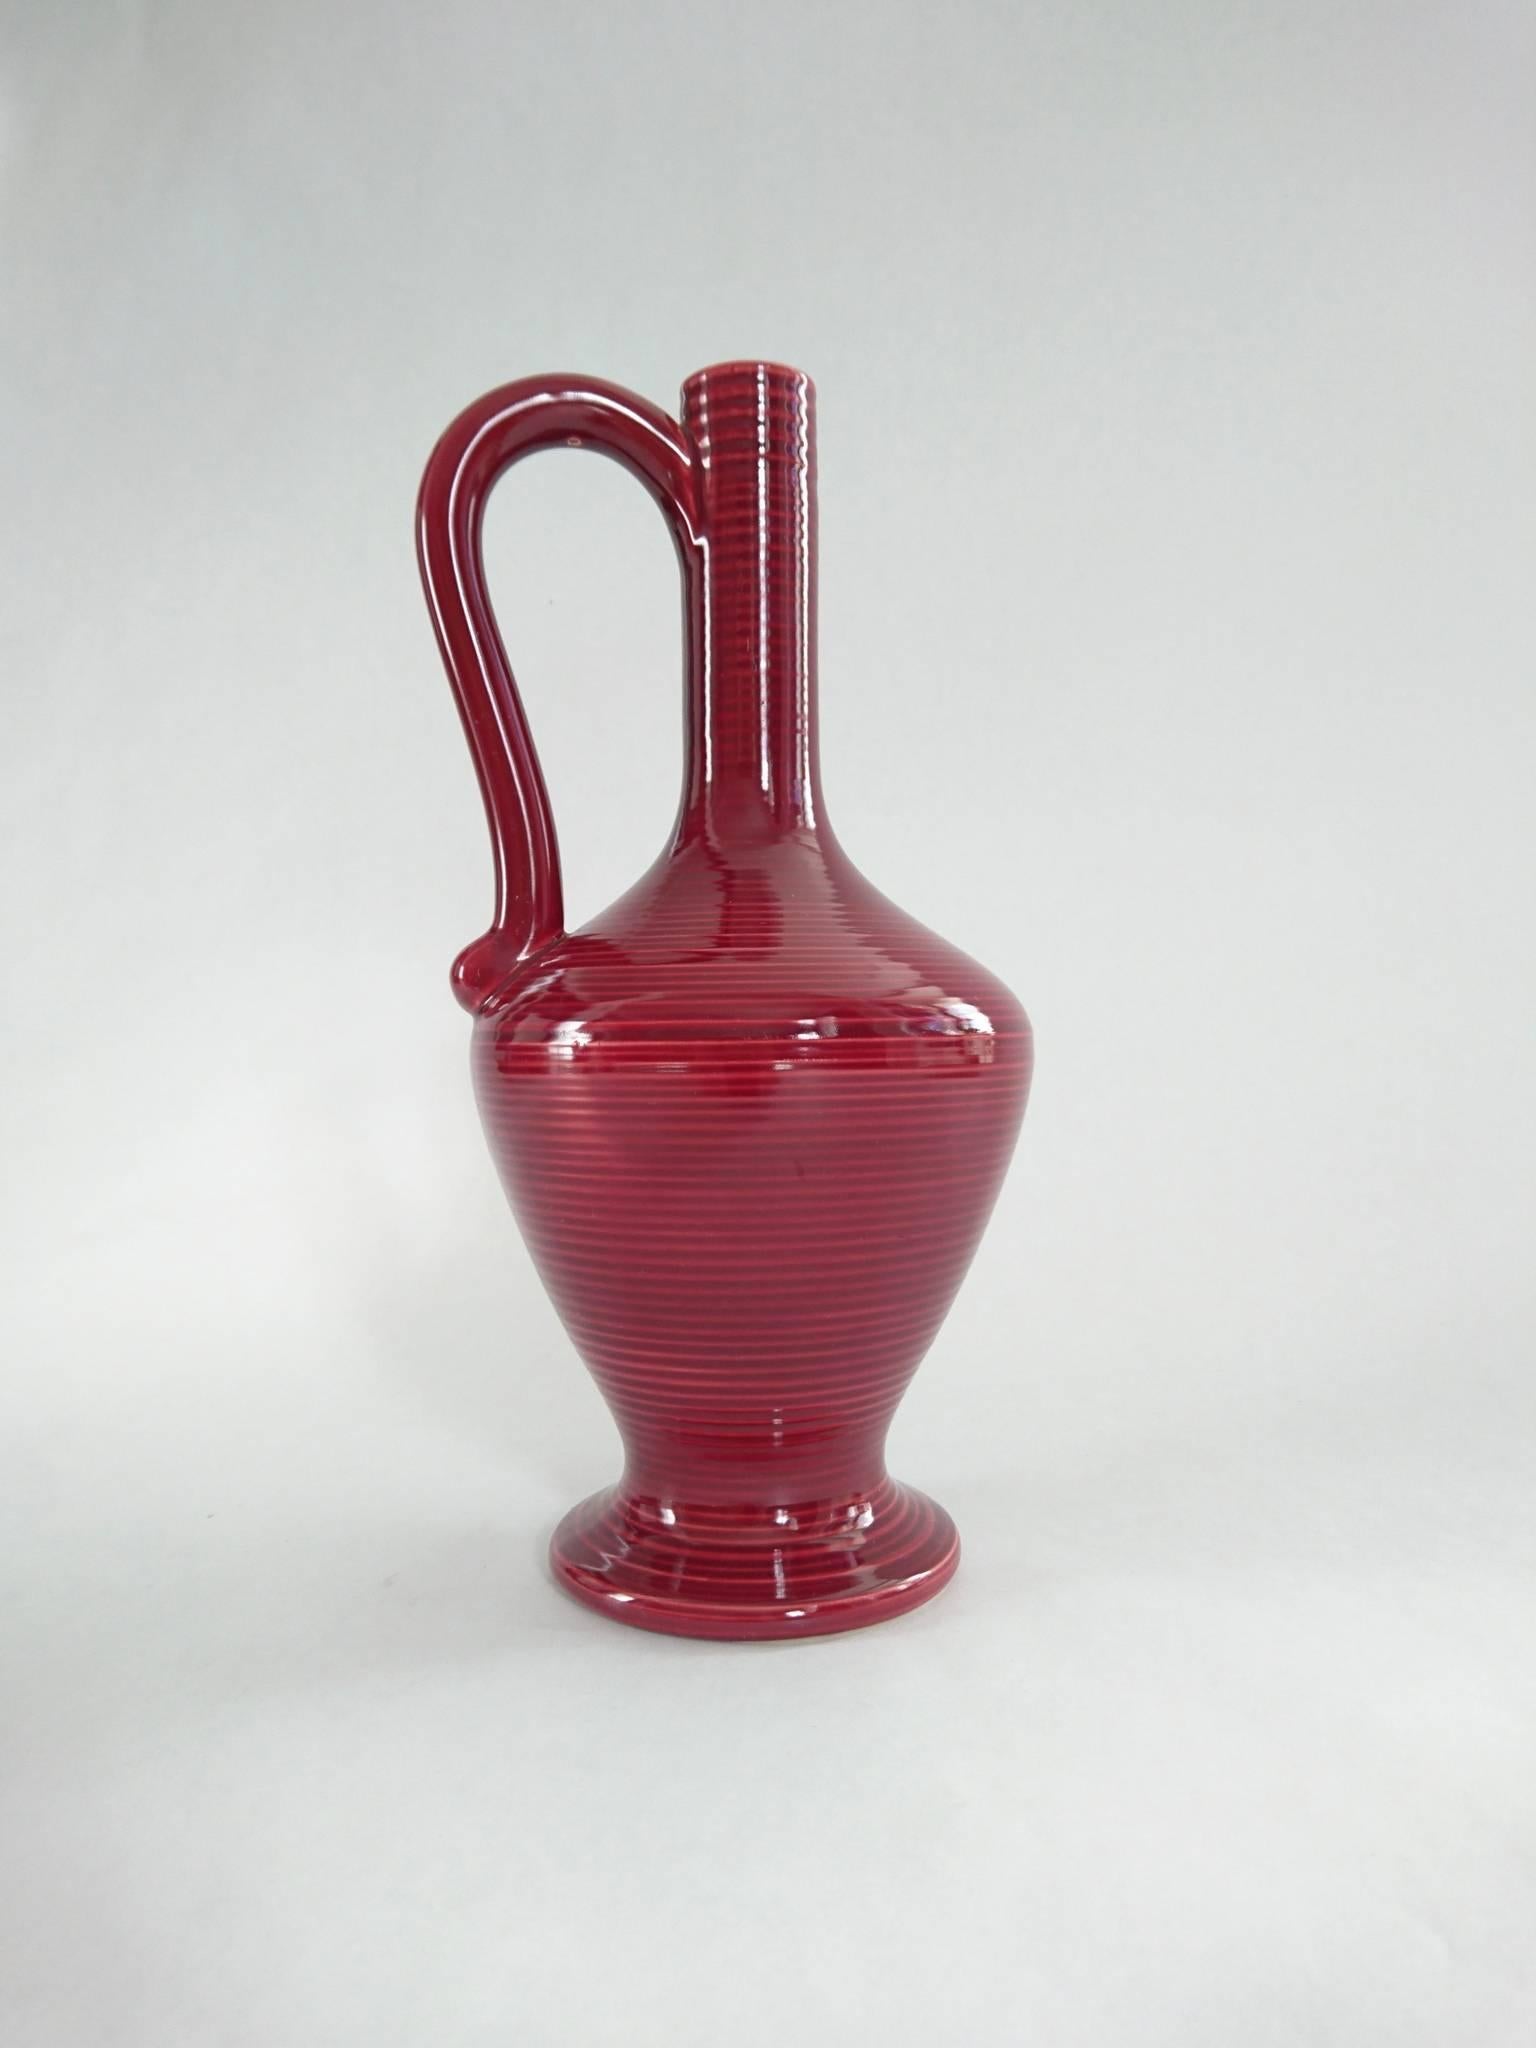 Vase en céramique rouge à rayures horizontales avec poignée, datant du milieu du siècle dernier, produit par Höganäs Keramik, en rayures horizontales d'un rouge profond par Holm et Bjurestig (H et B) entre 1946 et 1956, ce qui correspond à la